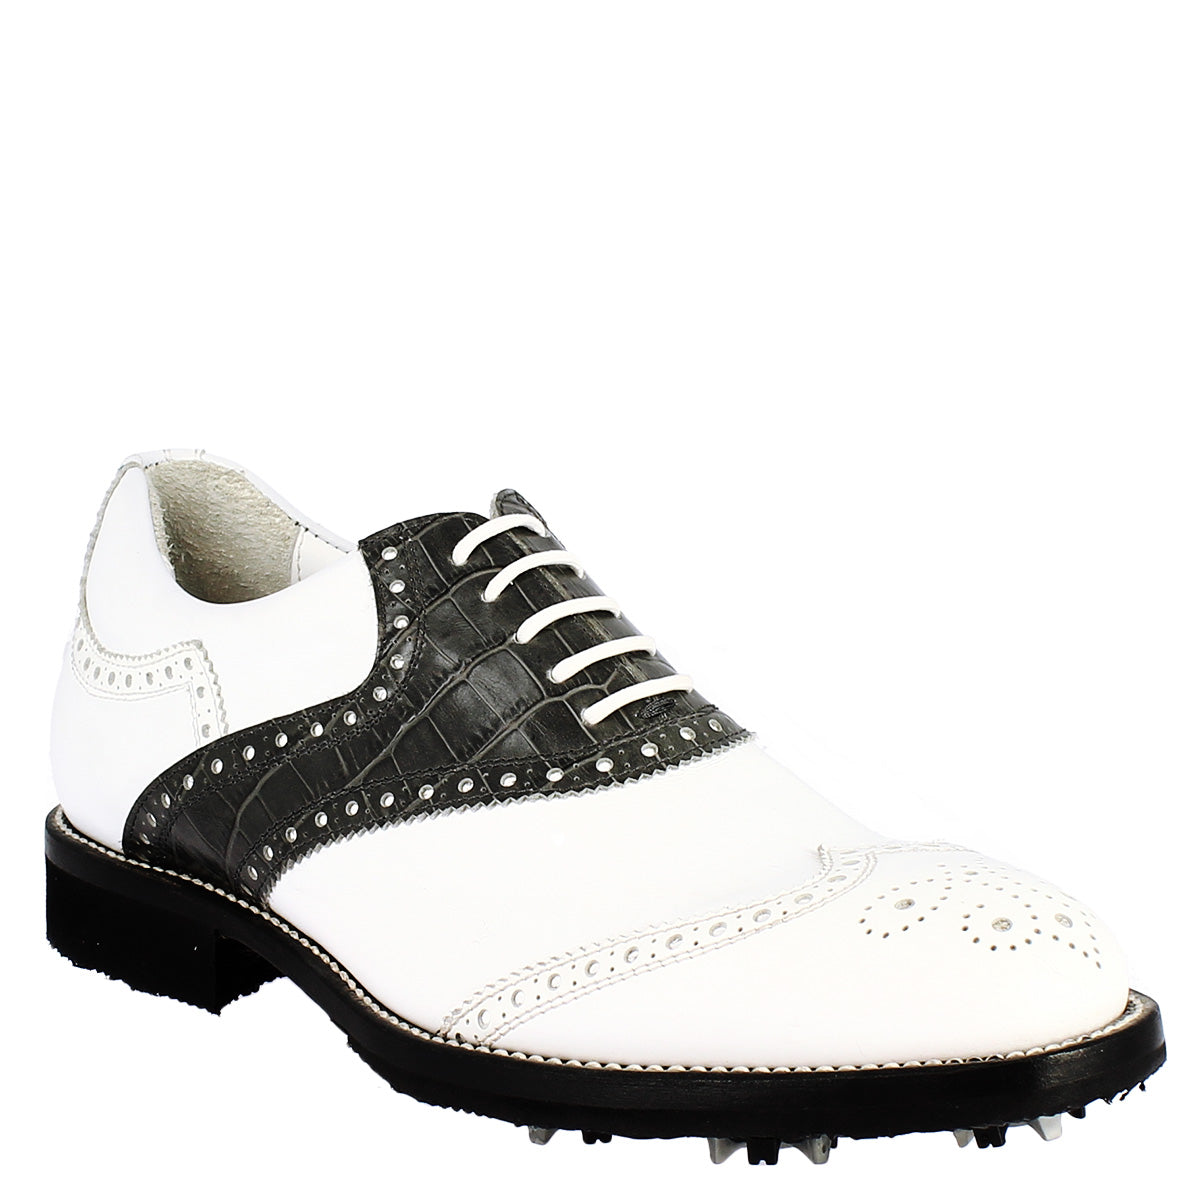 Scarpe golf donna artigianali in pelle pieno fiore bianco nero